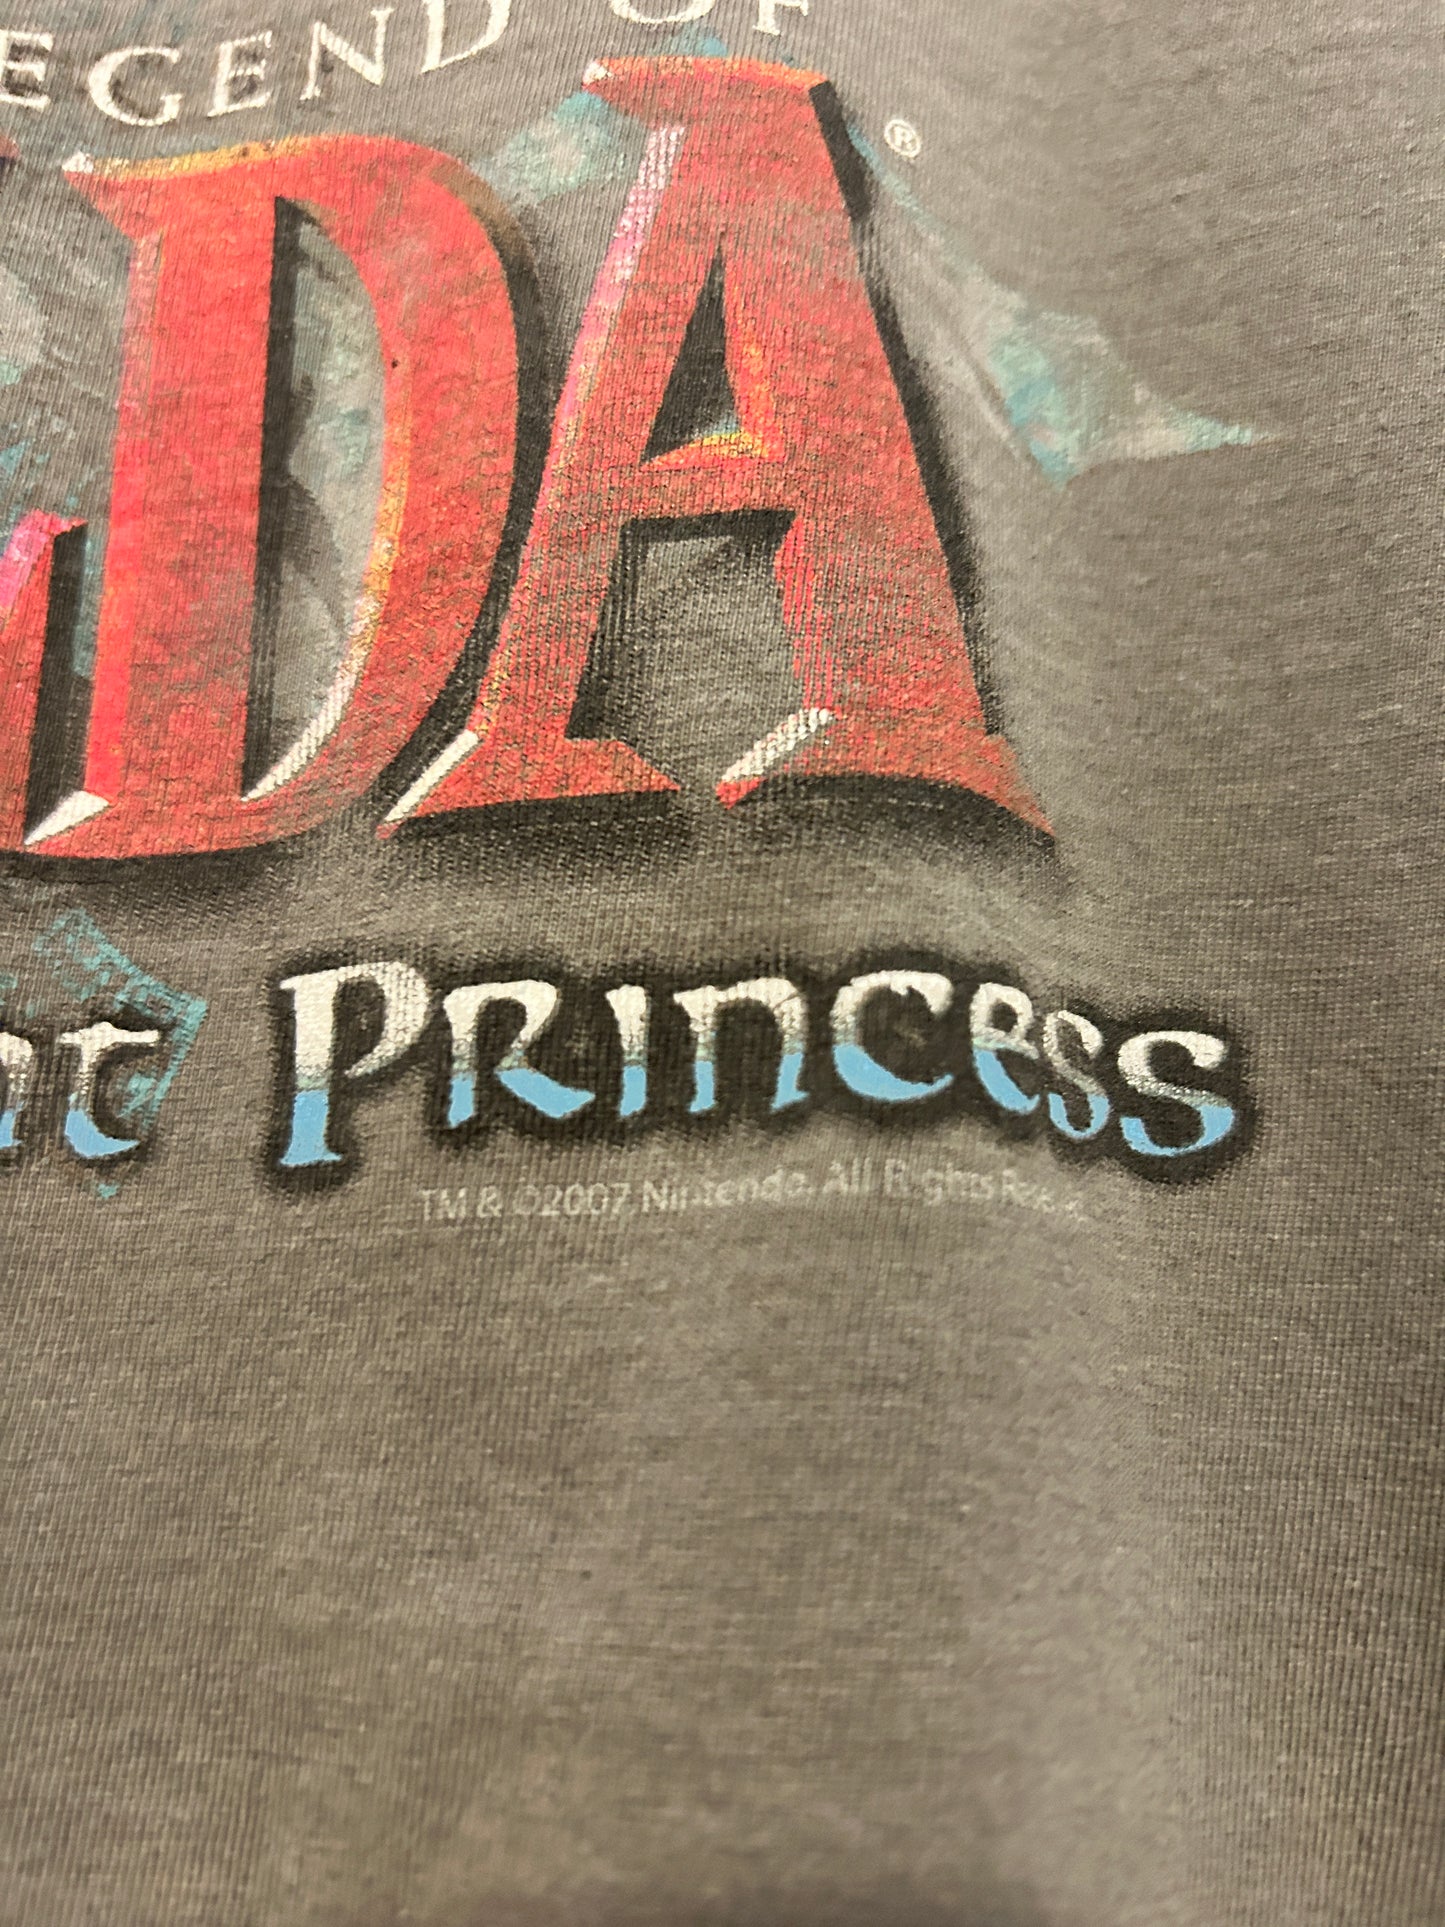 Vintage 2007 Zelda Twilight Princess Tee (L)